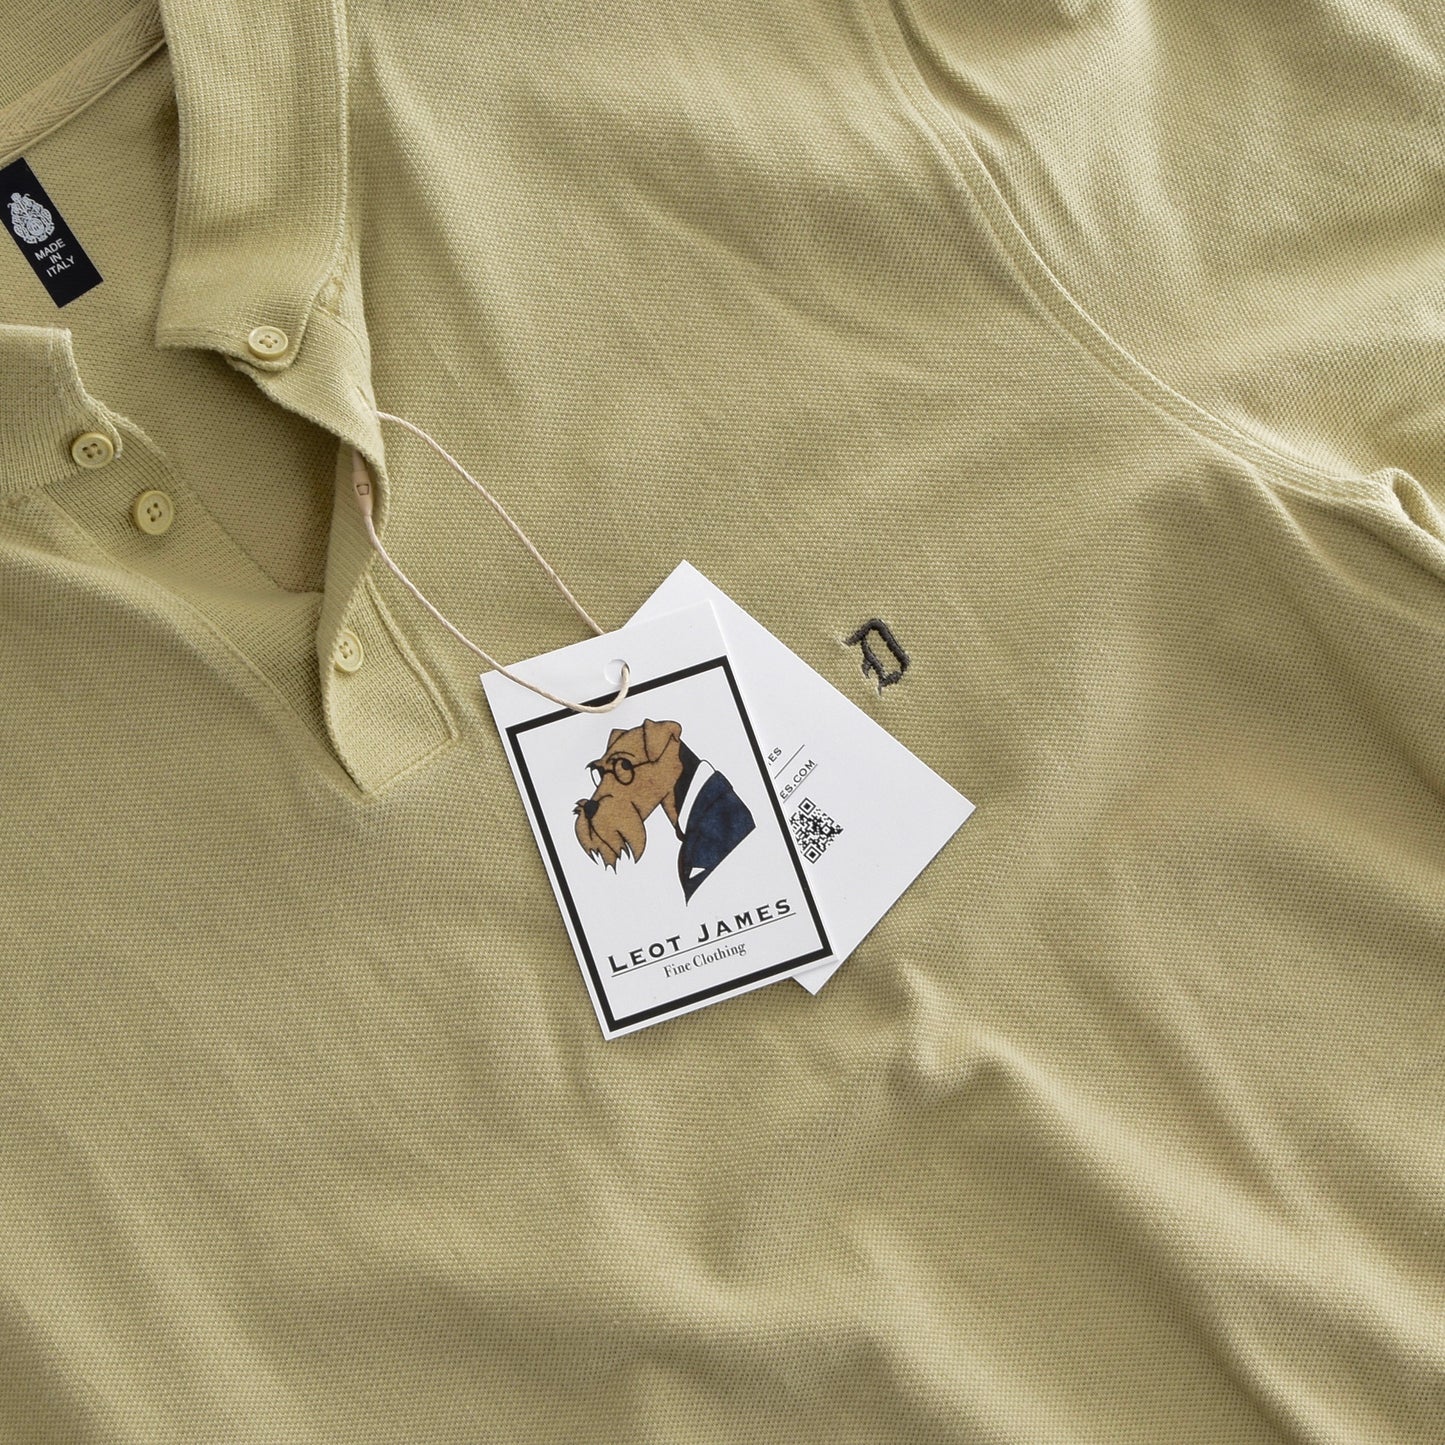 Dondup Polo Shirt Slim Size M - Khaki Green/Tan